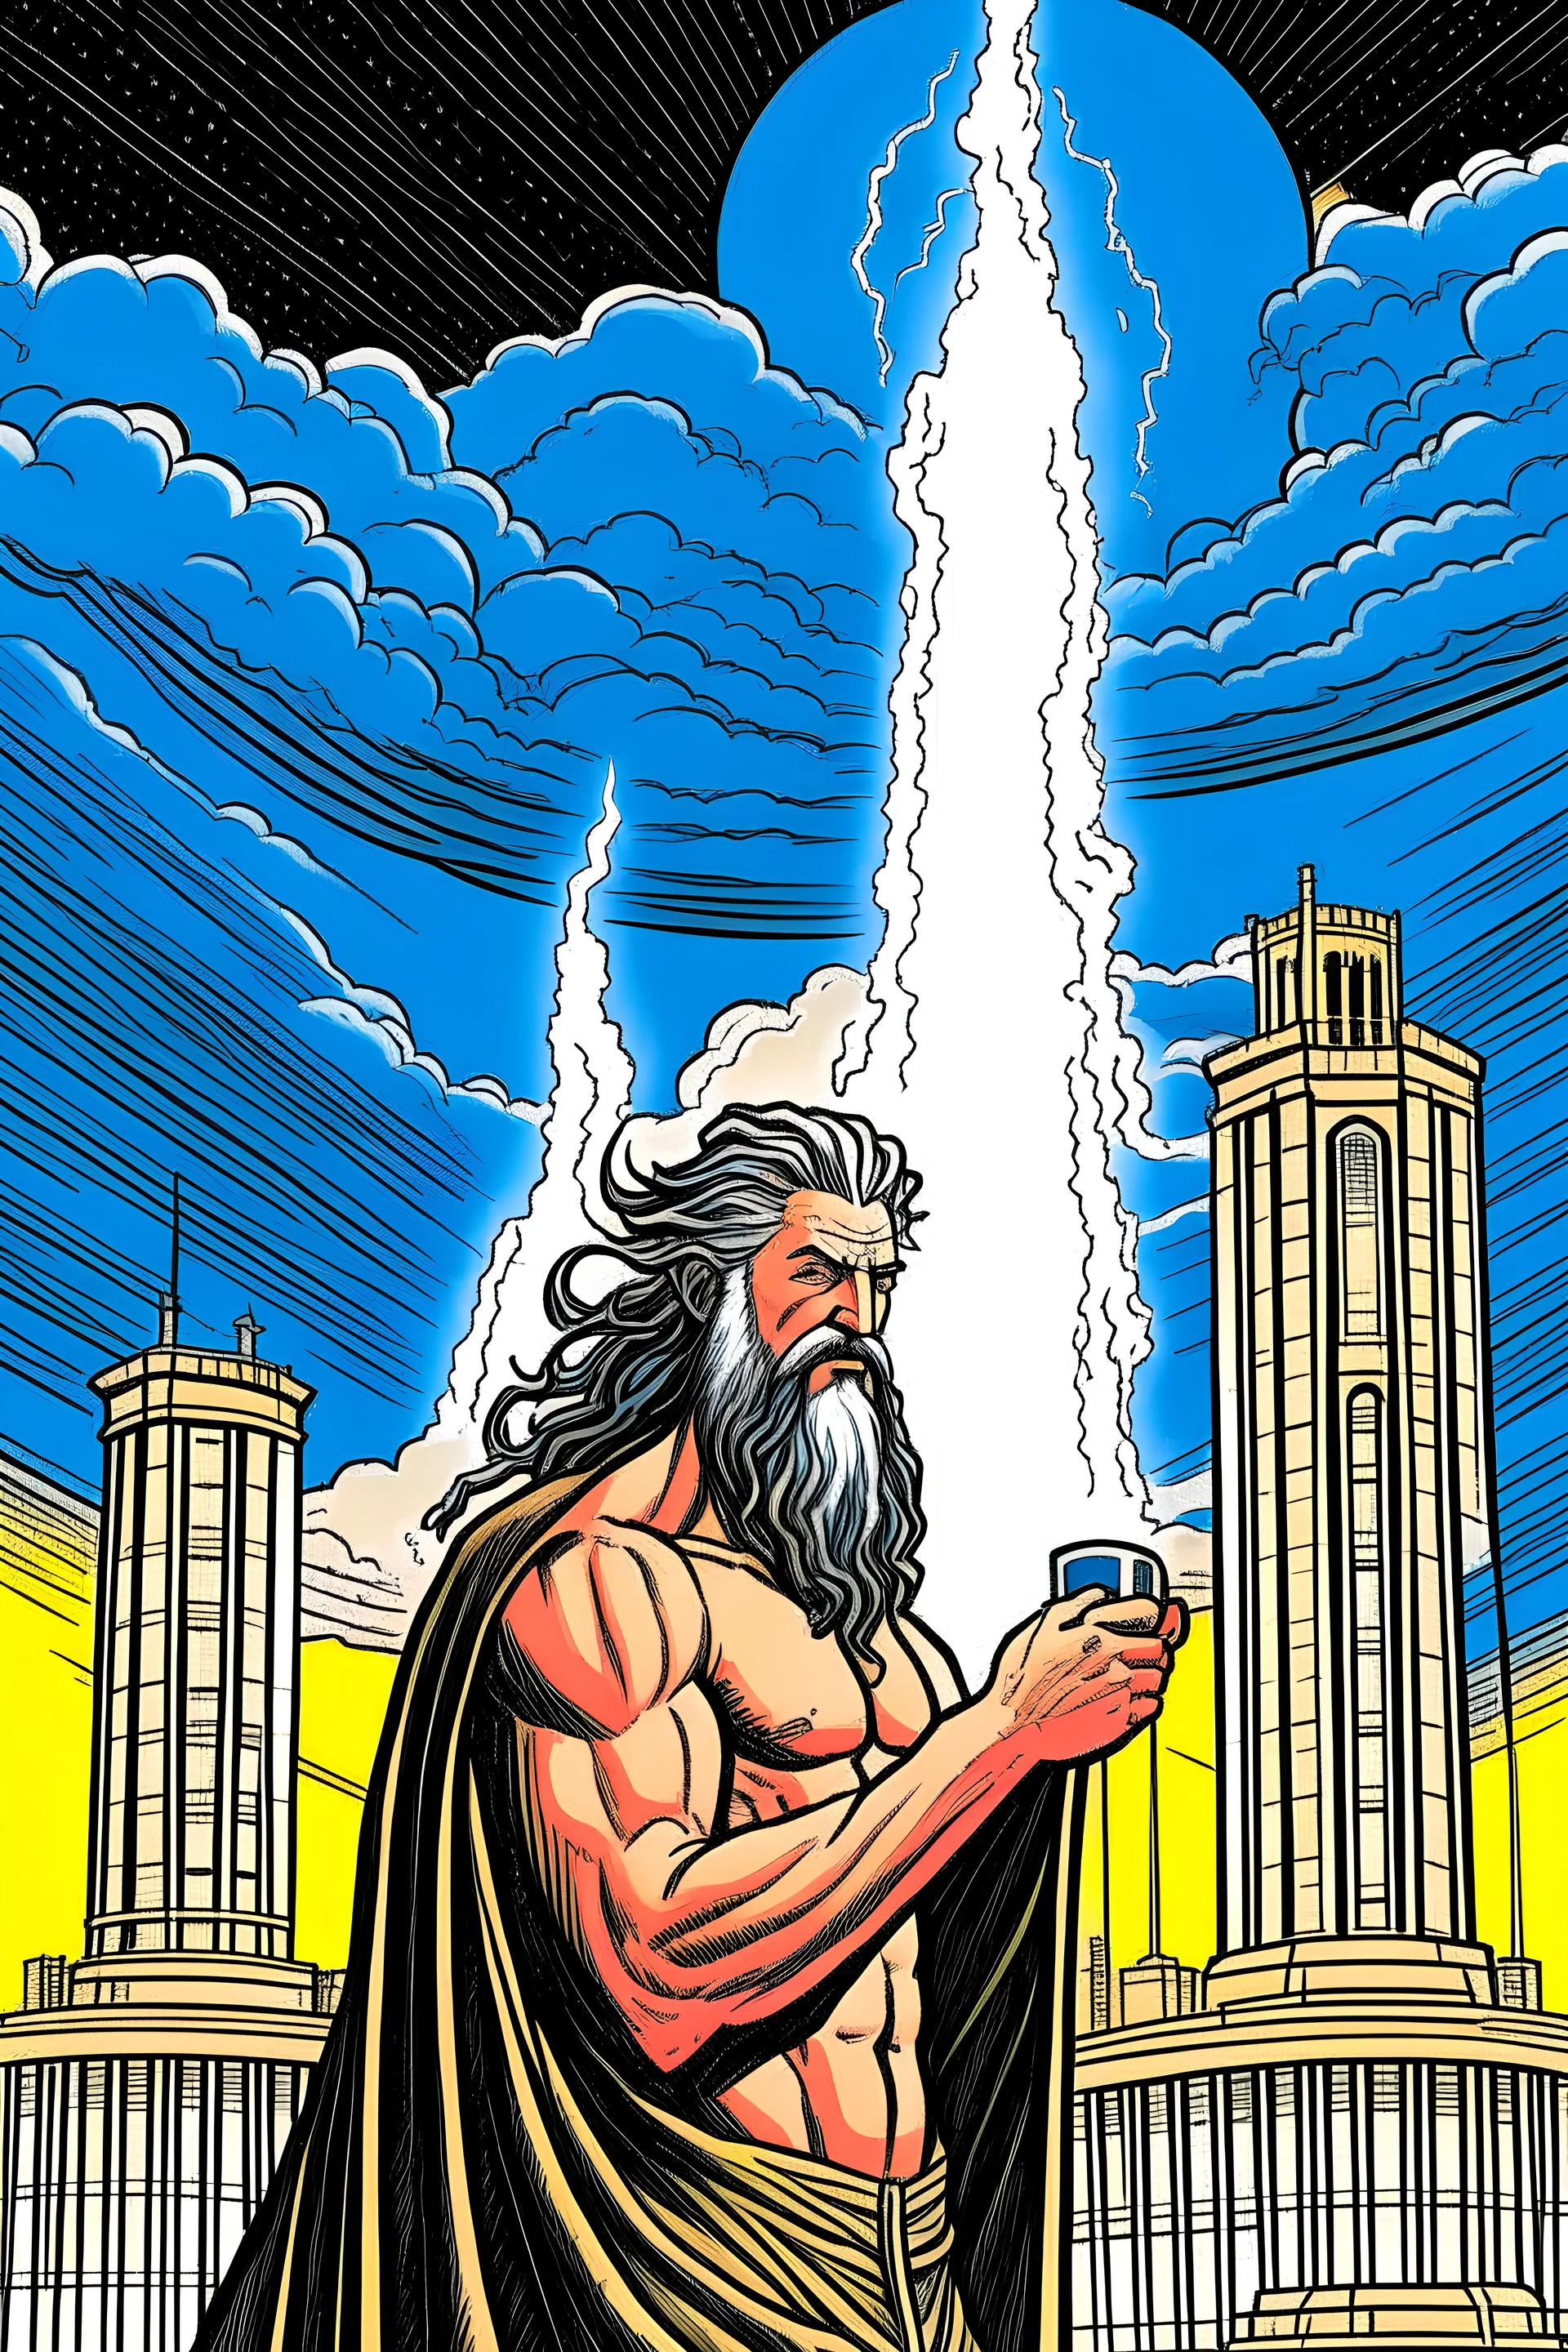 The Greek god Zeus builds a power plant with Nikola Tesla